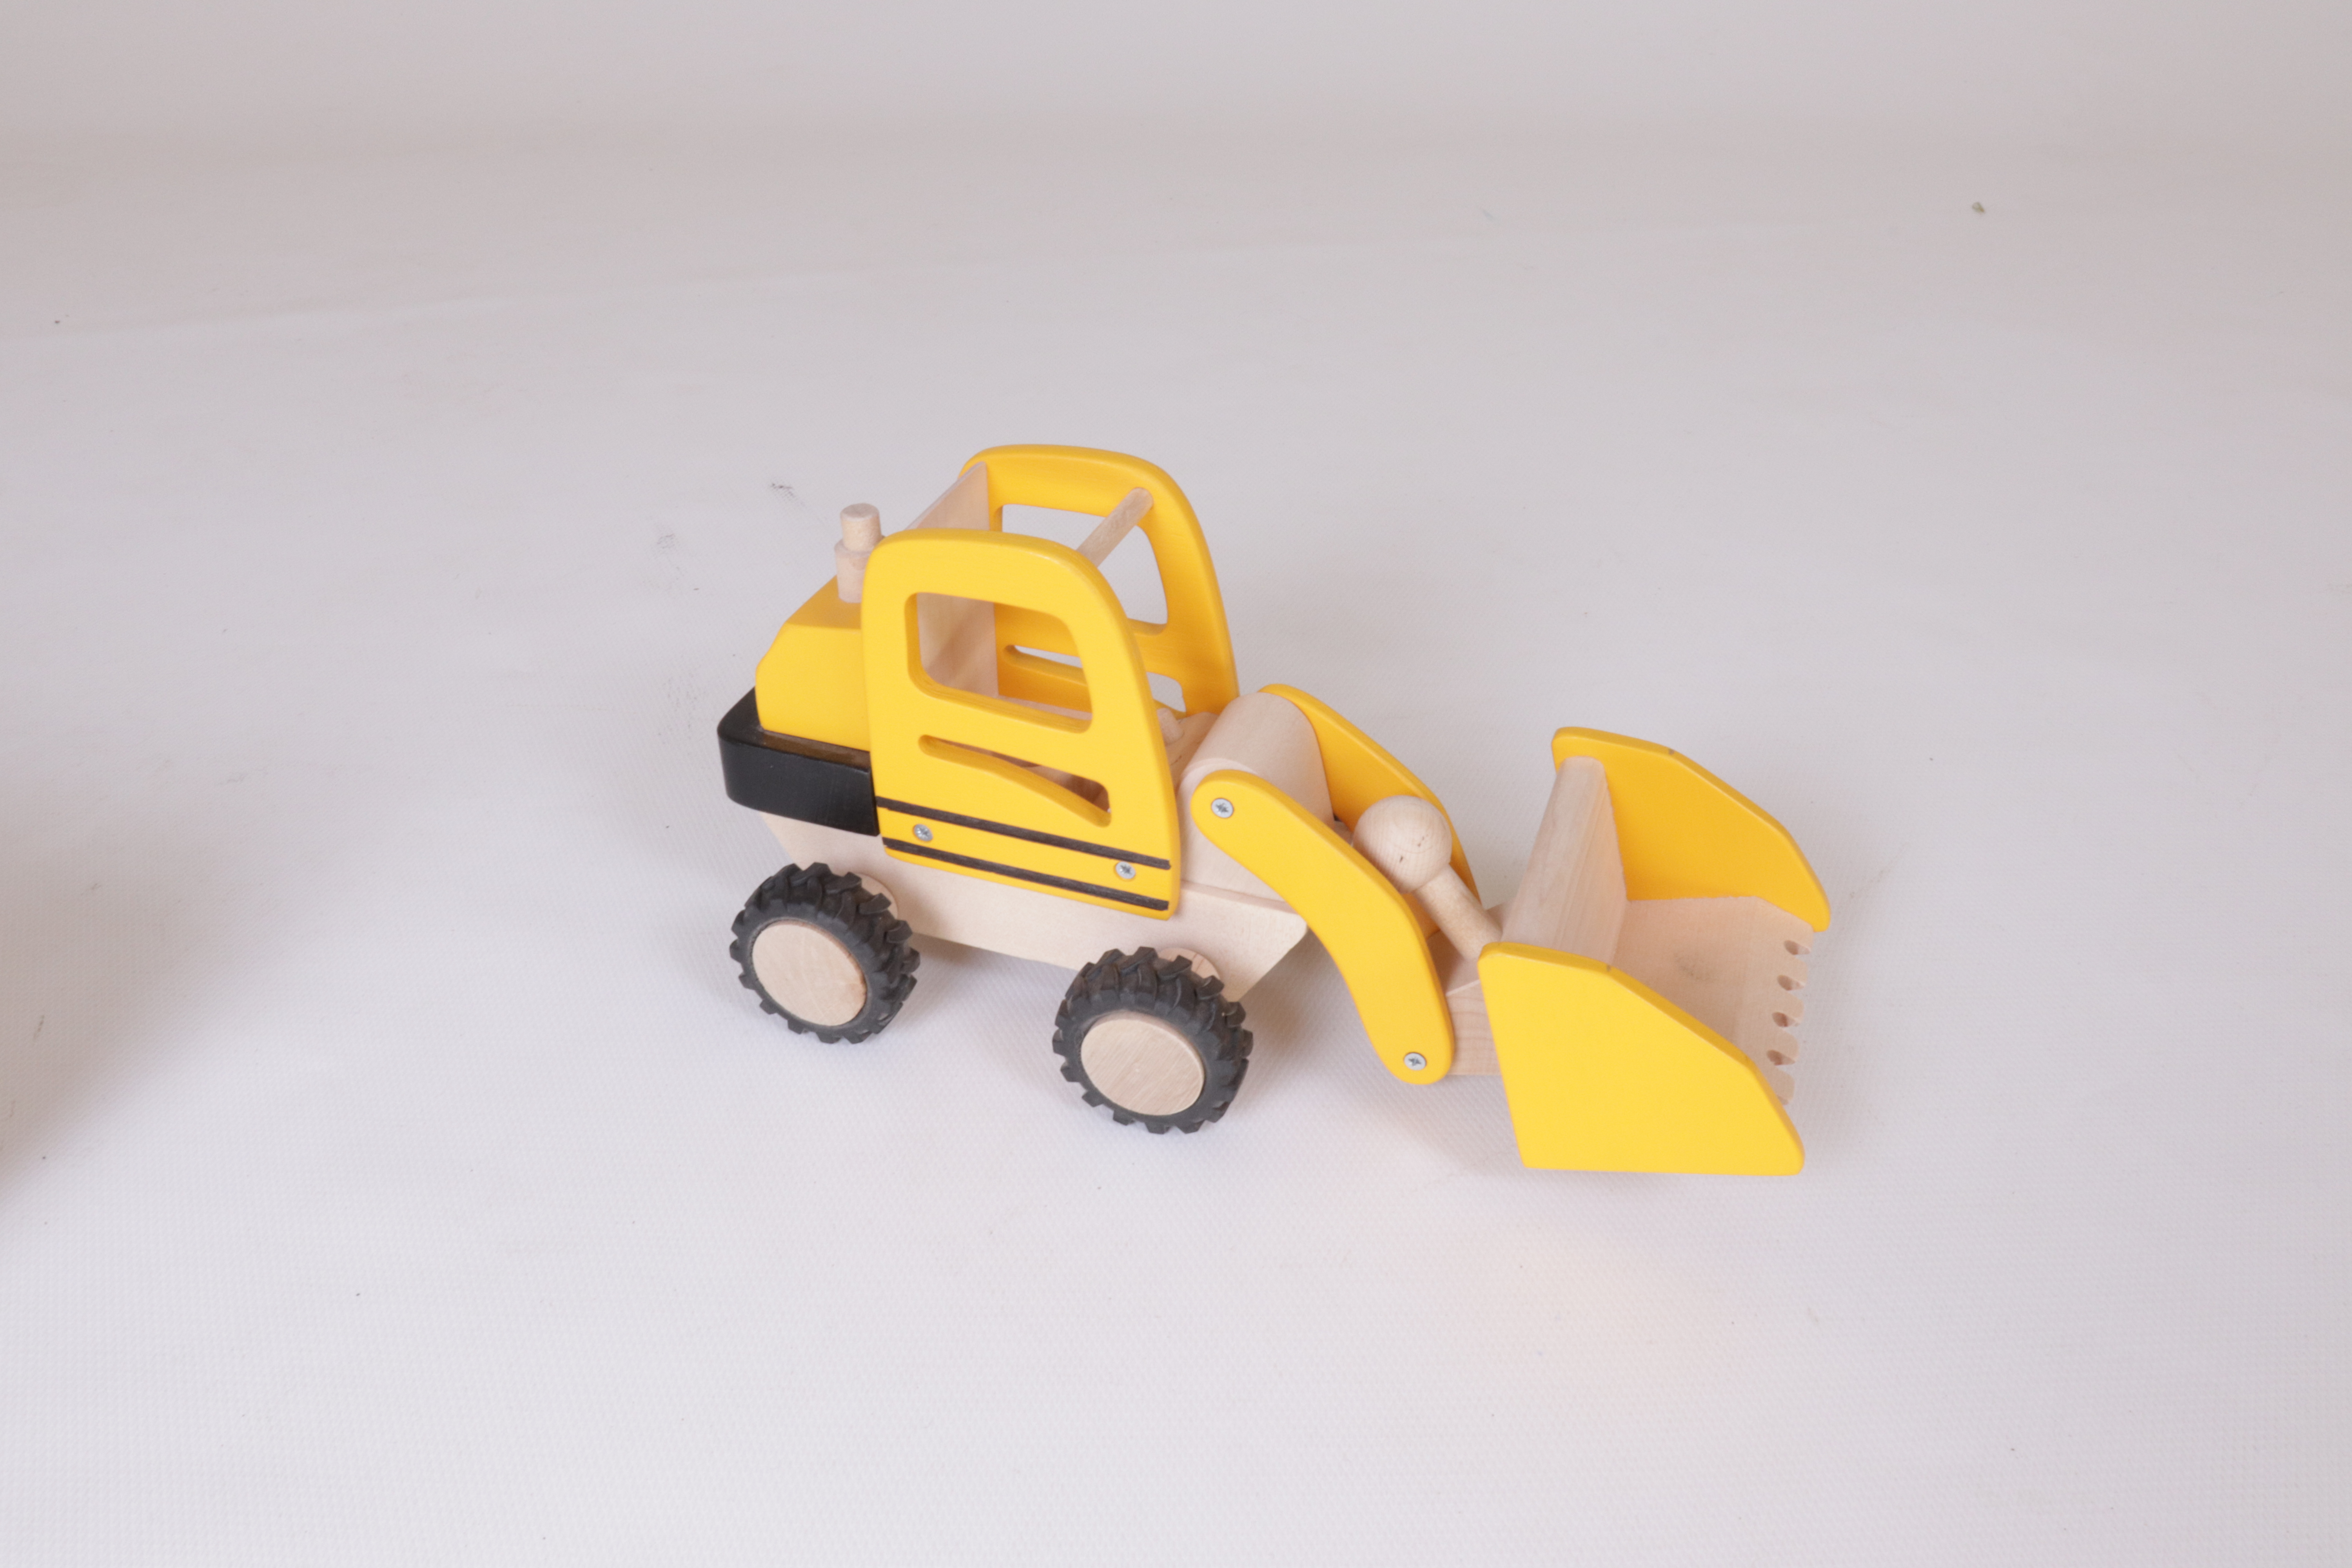 Baustellen Fahrzeuge Radlader Bagger Schaufel Walze Auto Spielzeug für Kinder 